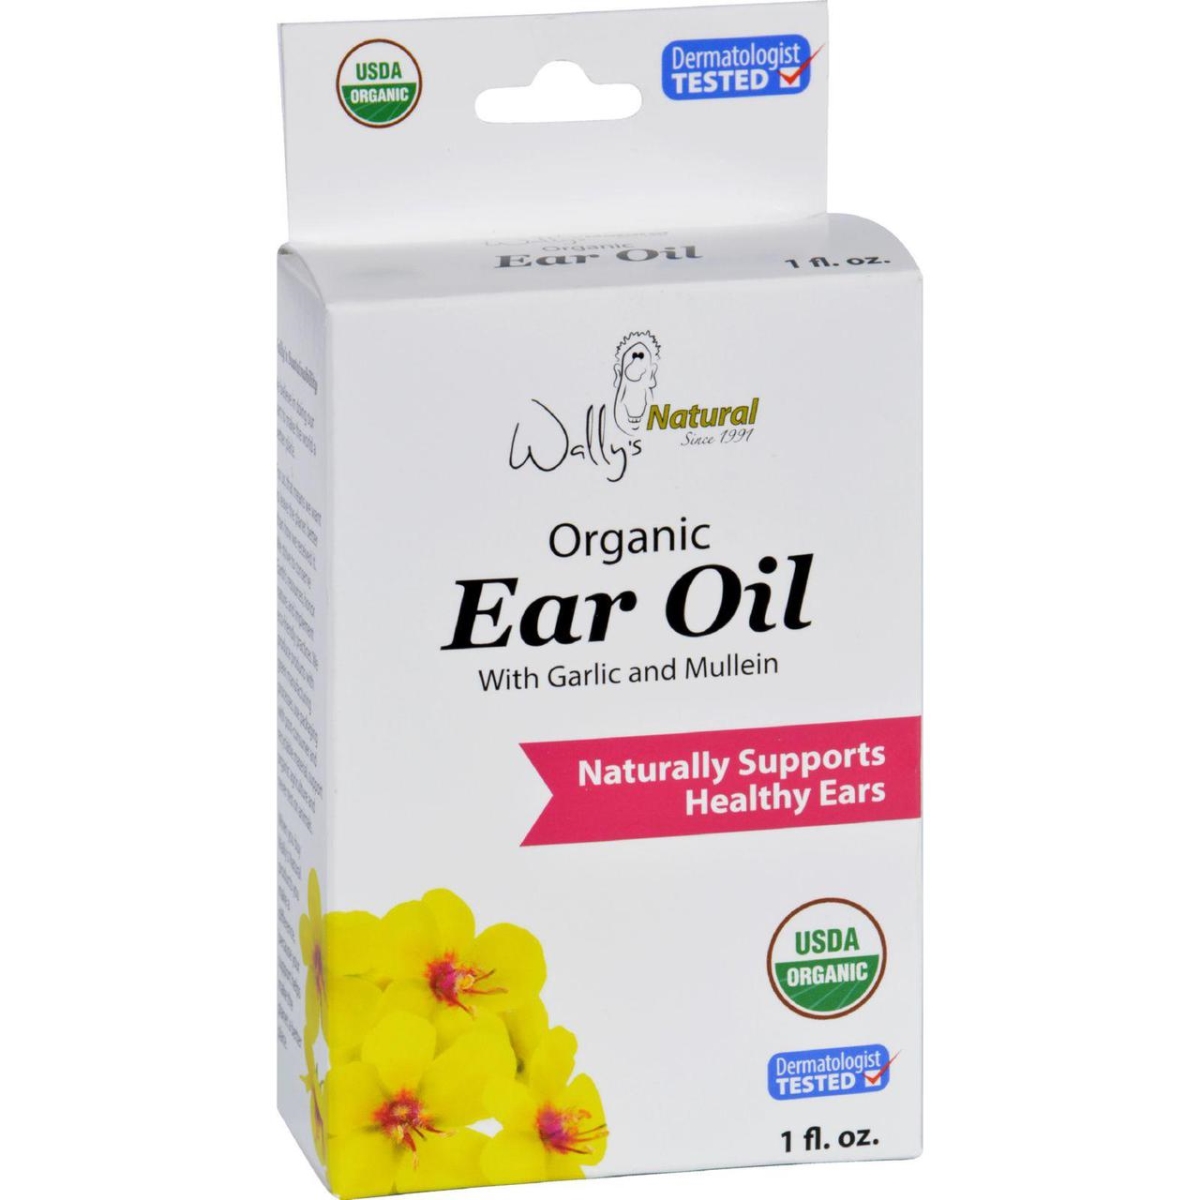 Hg1574524 1 Fl Oz Ear Oil - Organic